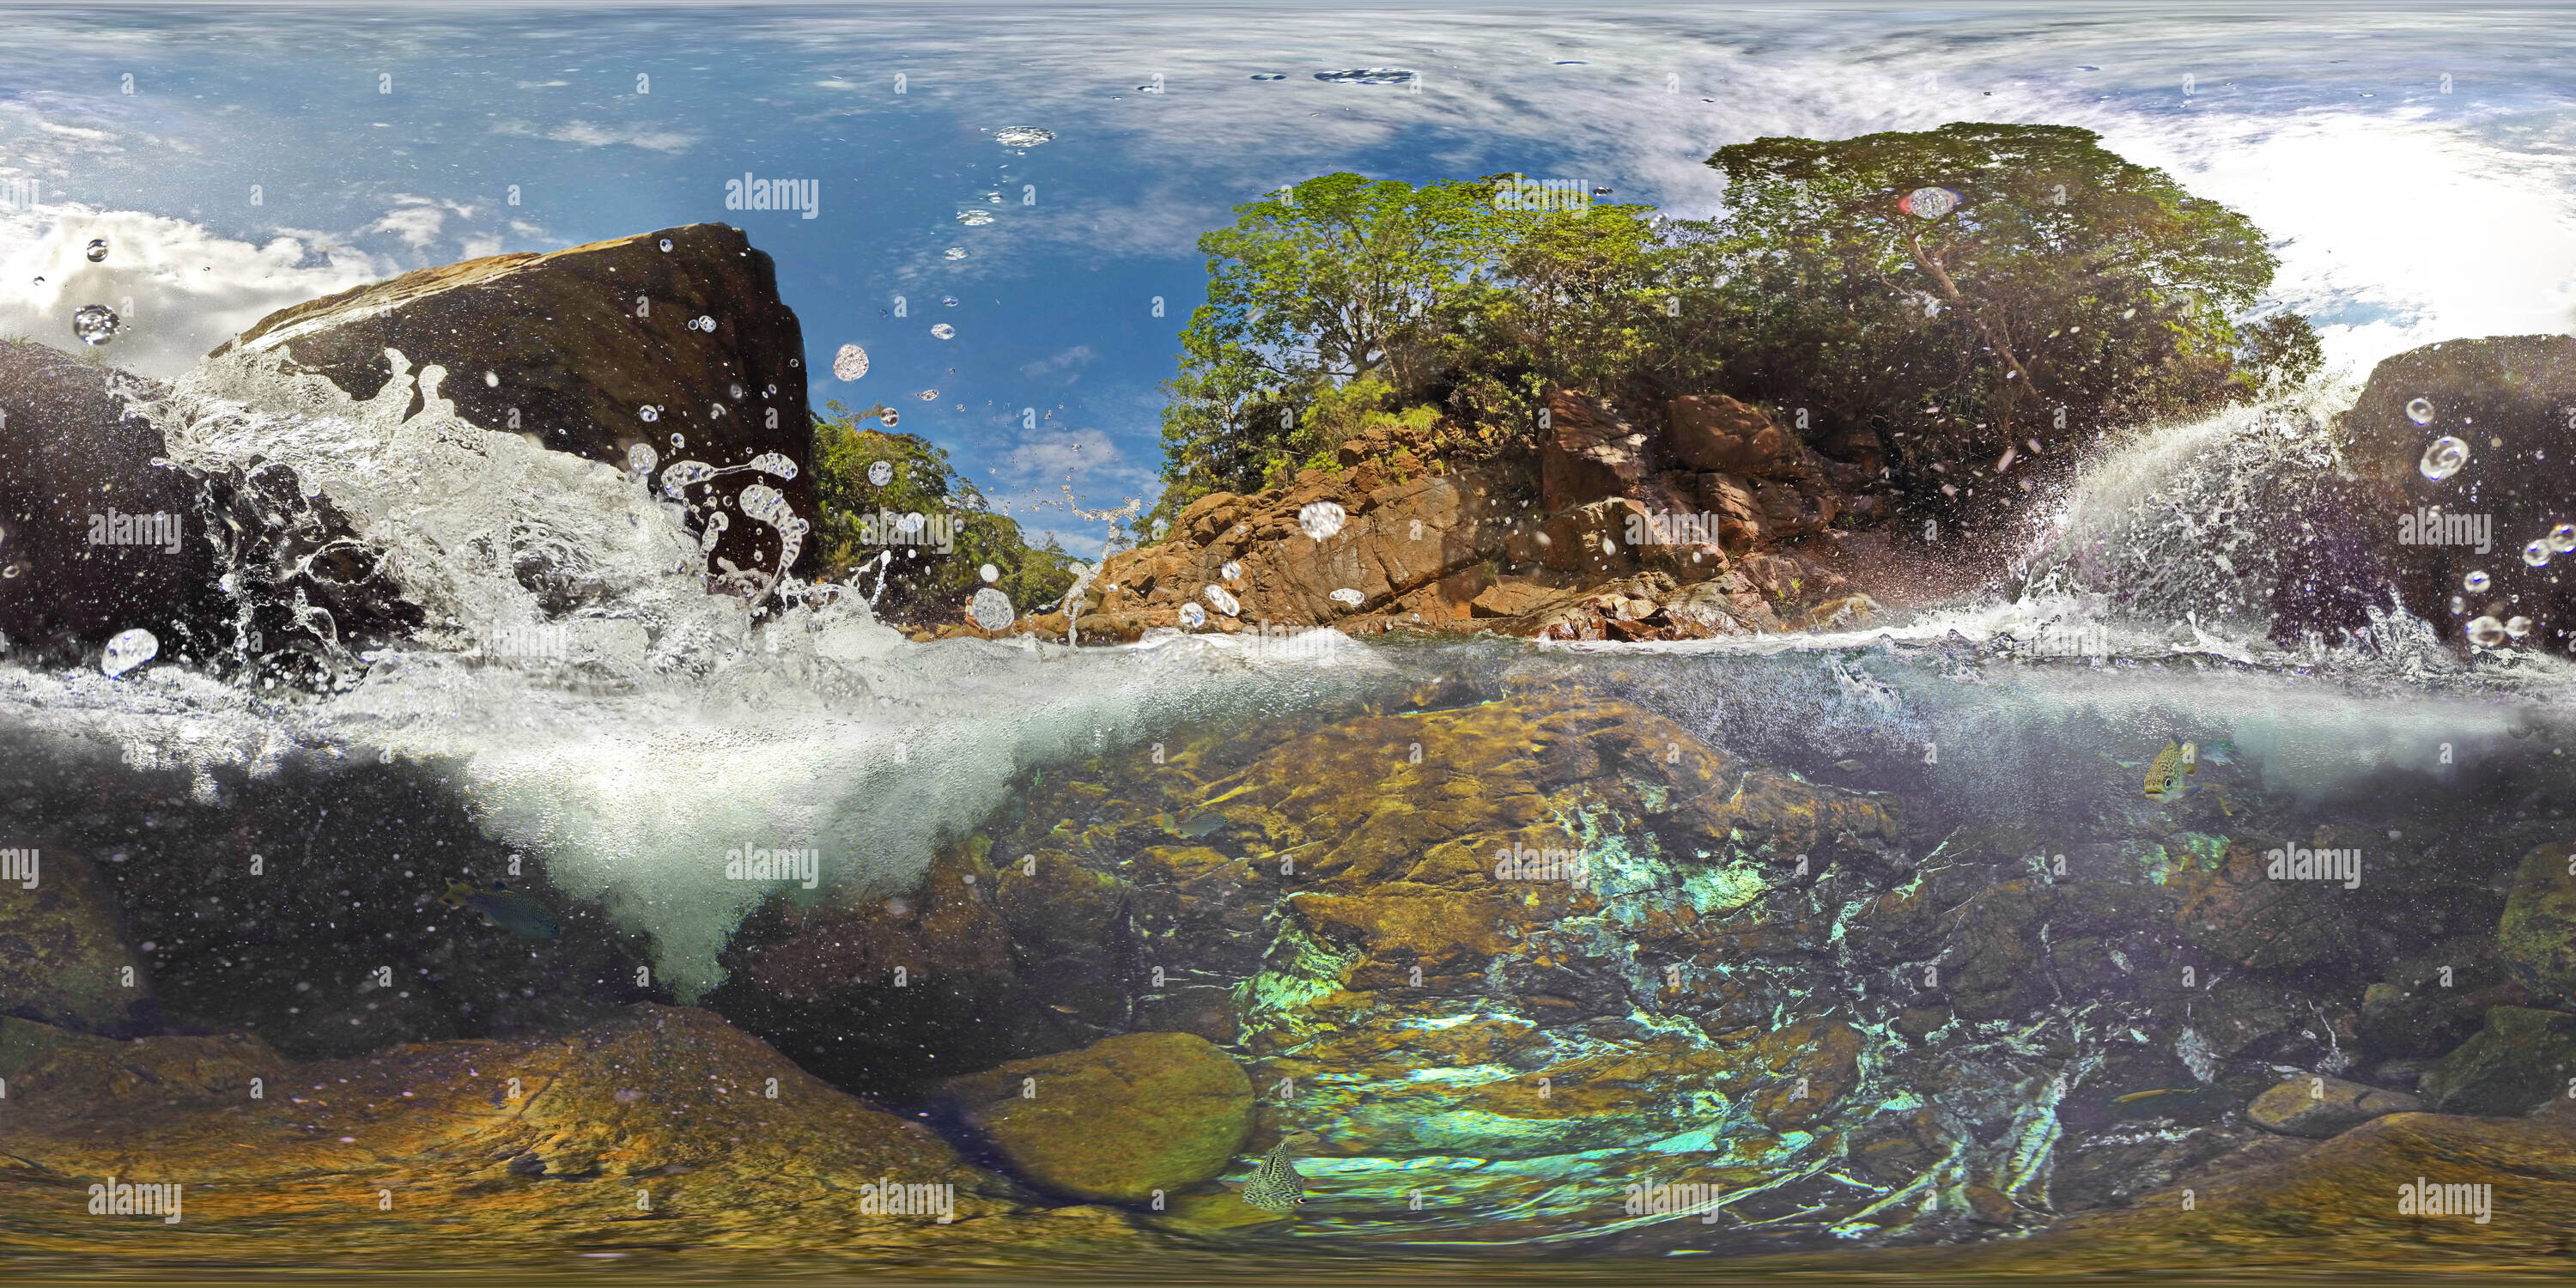 360 degree panoramic view of Jumpups Waterfall New Caledonia